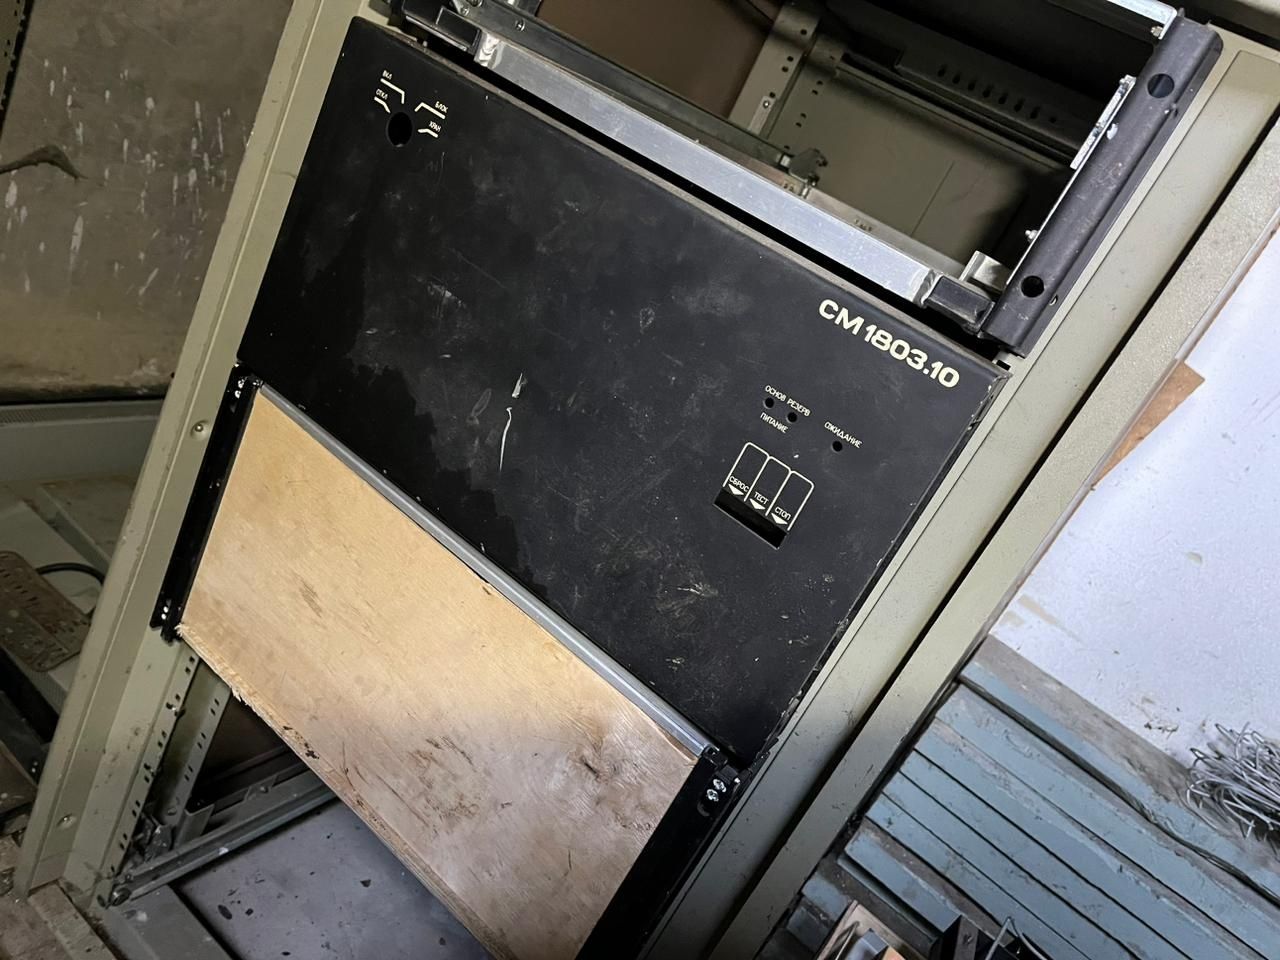 Шкаф корпус стойка системник ЭВМ СМ-1803 вычислительная техника СССР